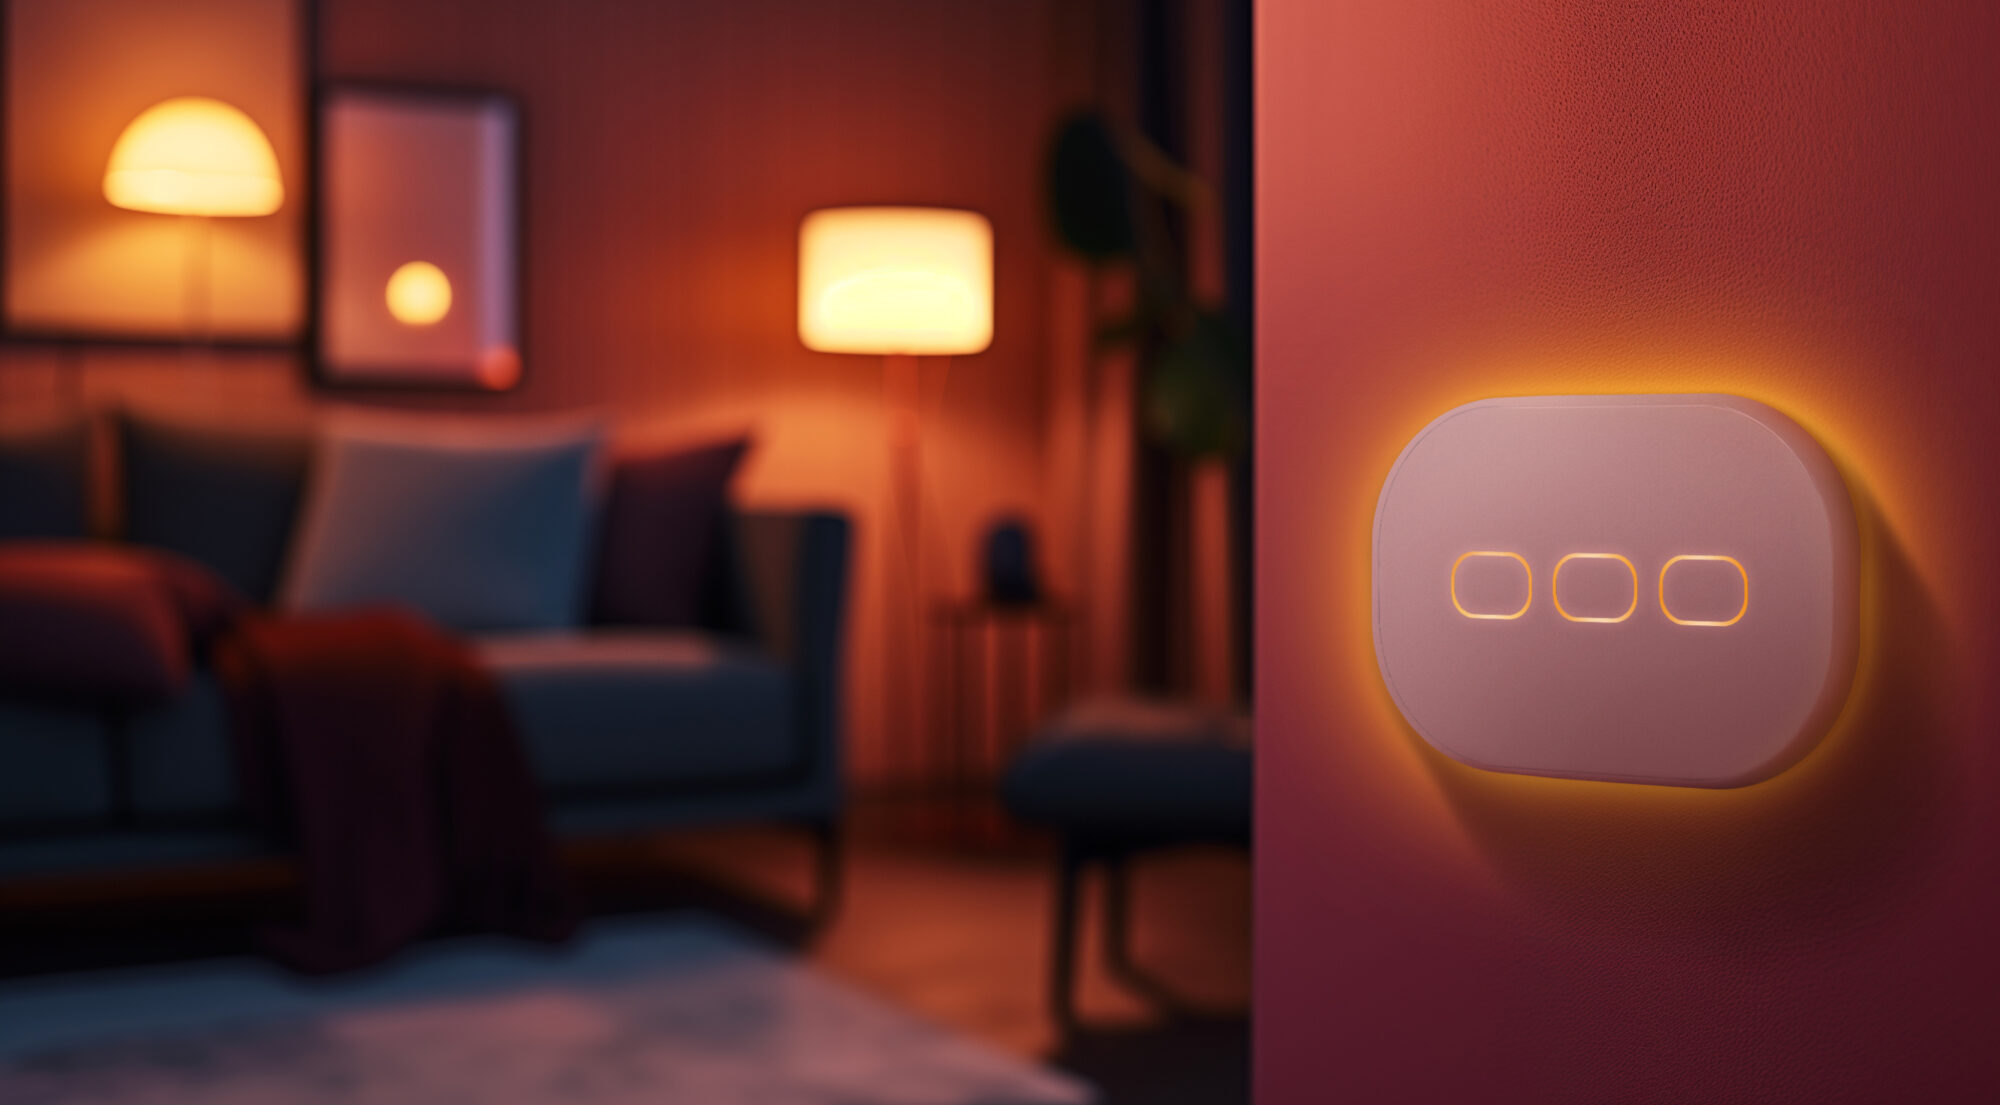 Un salotto accogliente dalla calda atmosfera. WiOO è l'interruttore intelligente che controlla le luci e i dispositivi compatibili con Apple HomeKit. La tua casa, davvero smart.